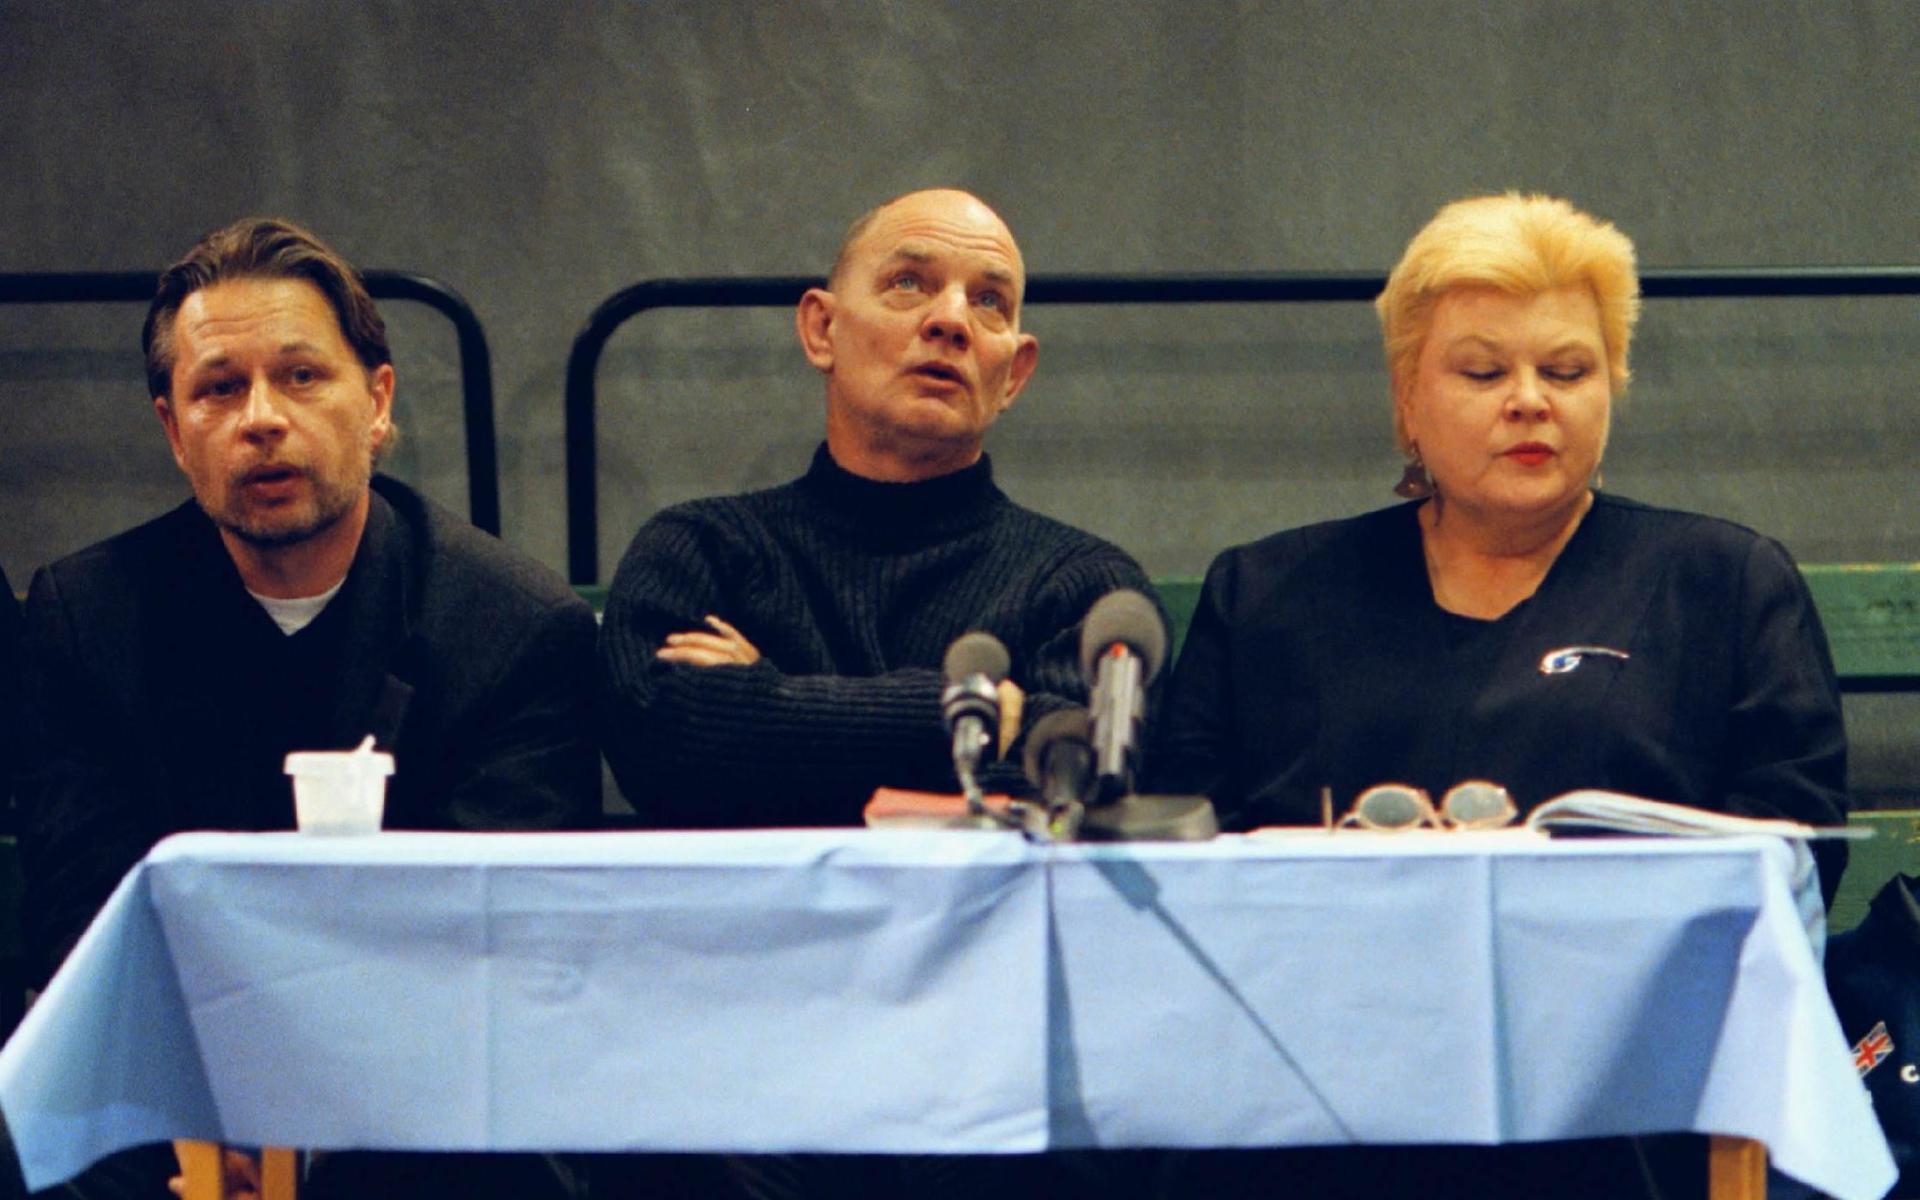 1999. Lars Norén presenterar pjäsen 7:3 tillsammans med skådespelarna Reine Brynolfsson och Isa Stenberg. Pjäsen uppfördes i samarbete med en grupp fångar med öppet nazistiska åsikter och blev mycket omdebatterad. 